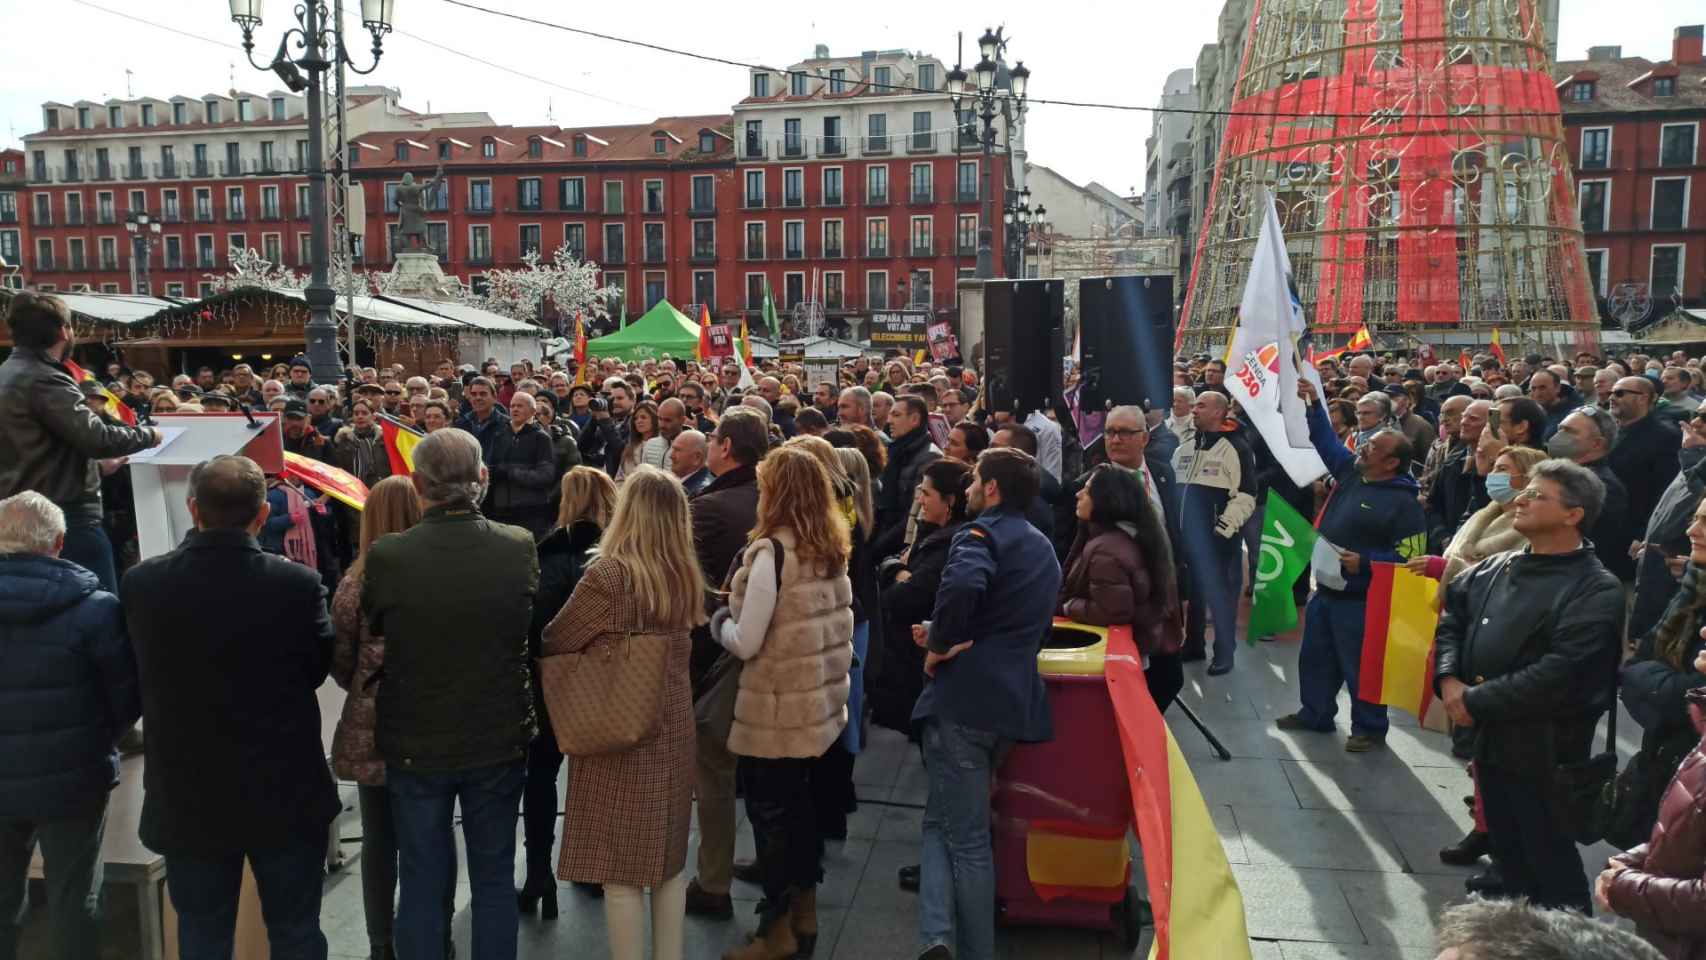 Concentración en la Plaza Mayor de Valladolid para exigir la dimisión del Gobierno de España y la convocatoria de elecciones